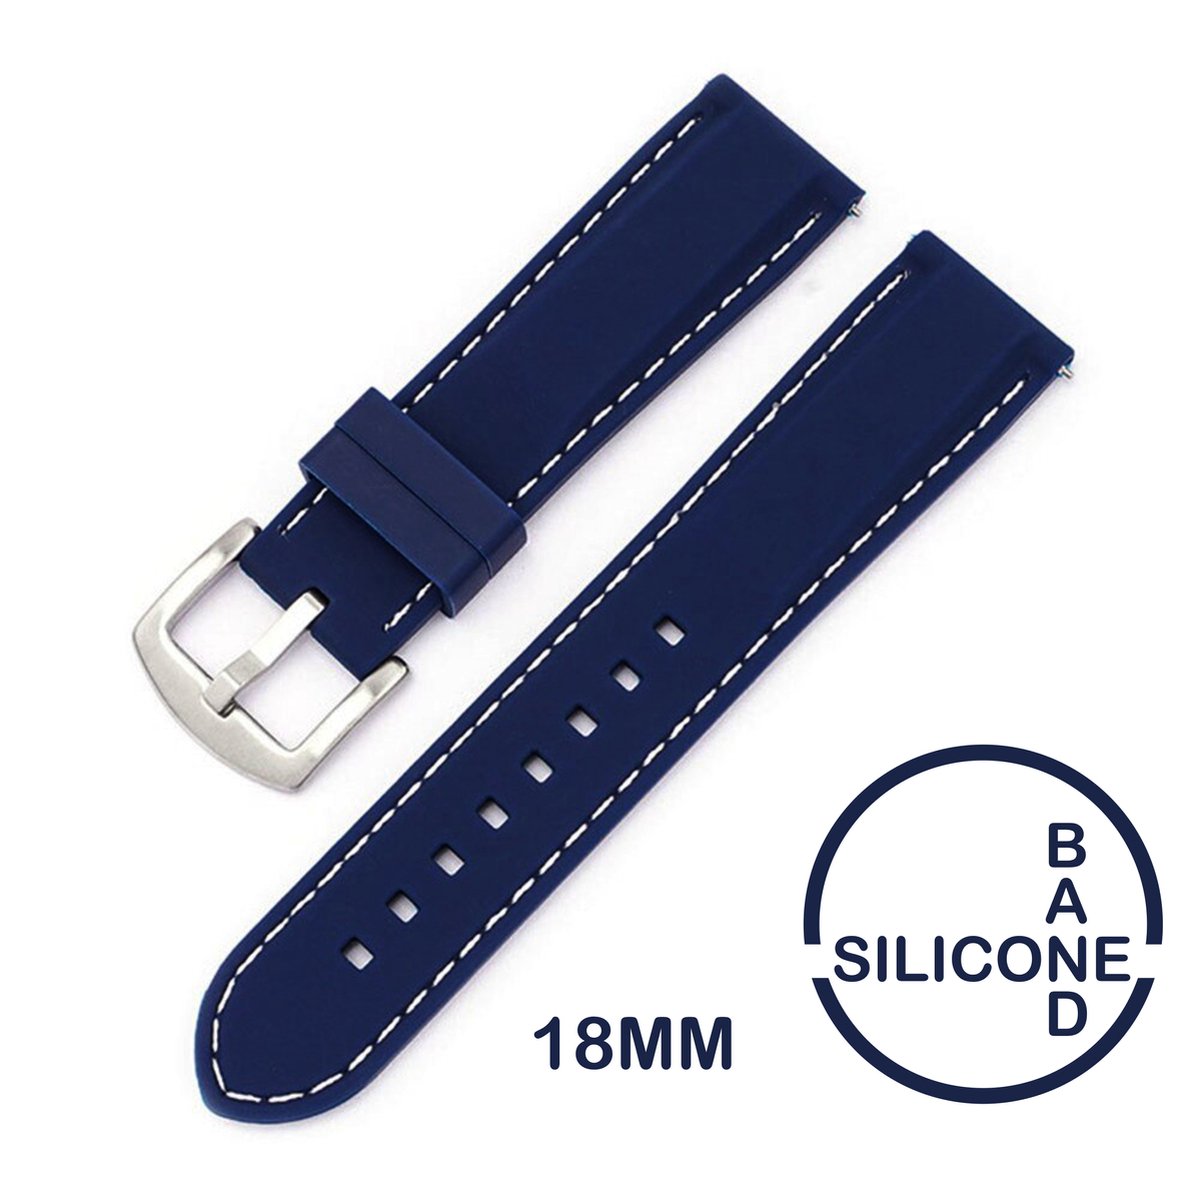 18mm Rubber Siliconen horlogeband Donker blauw met witte stiksels passend op o.a Casio Seiko Citizen en alle andere merken - 18 mm Bandje - Horlogebandje horlogeband